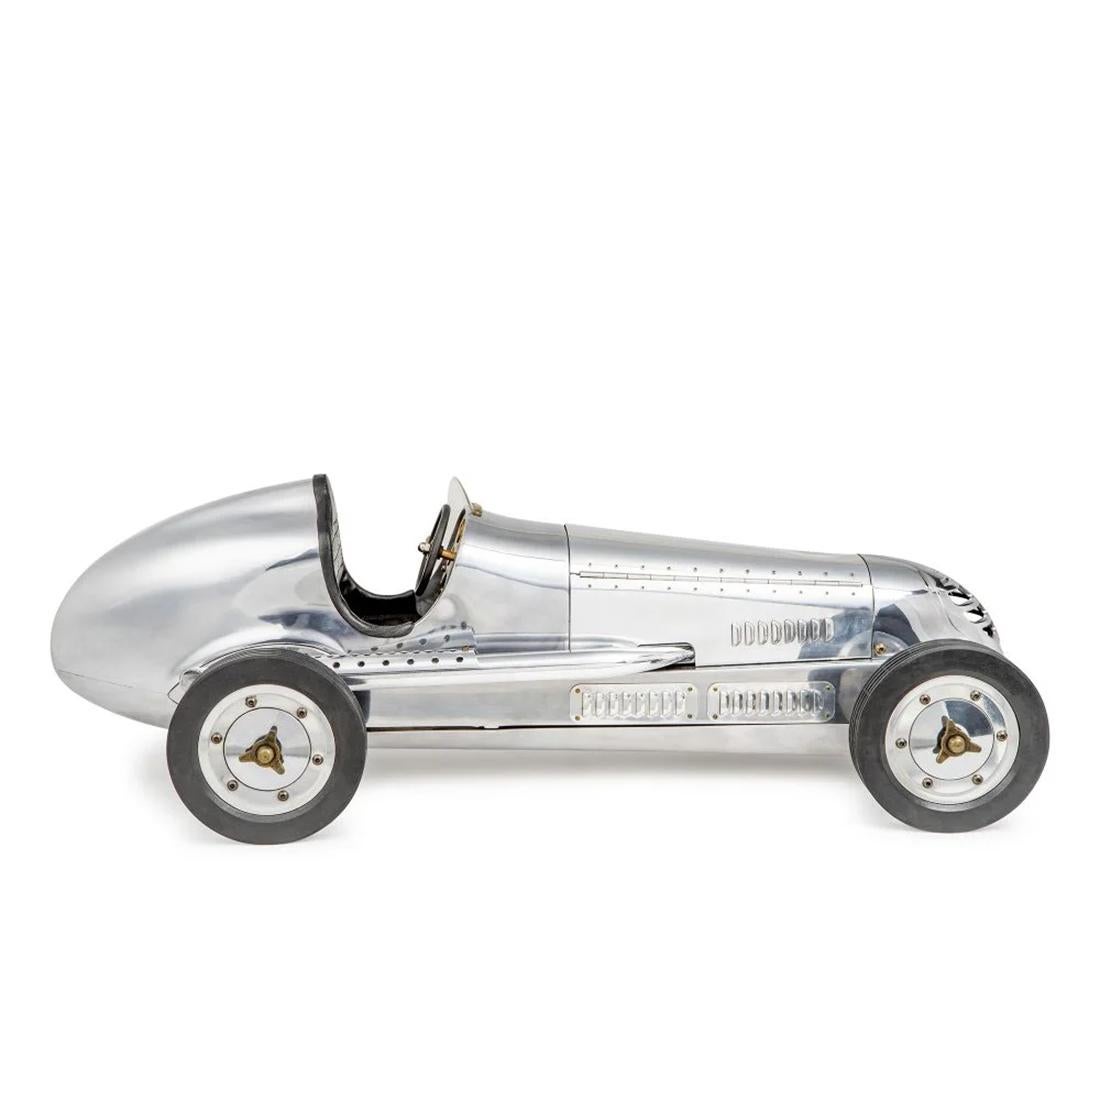 Modèle Spindizzies polies racing avec aluminium 
avec des détails en plastique et en aluminium. Modèle 
en aluminium poli.